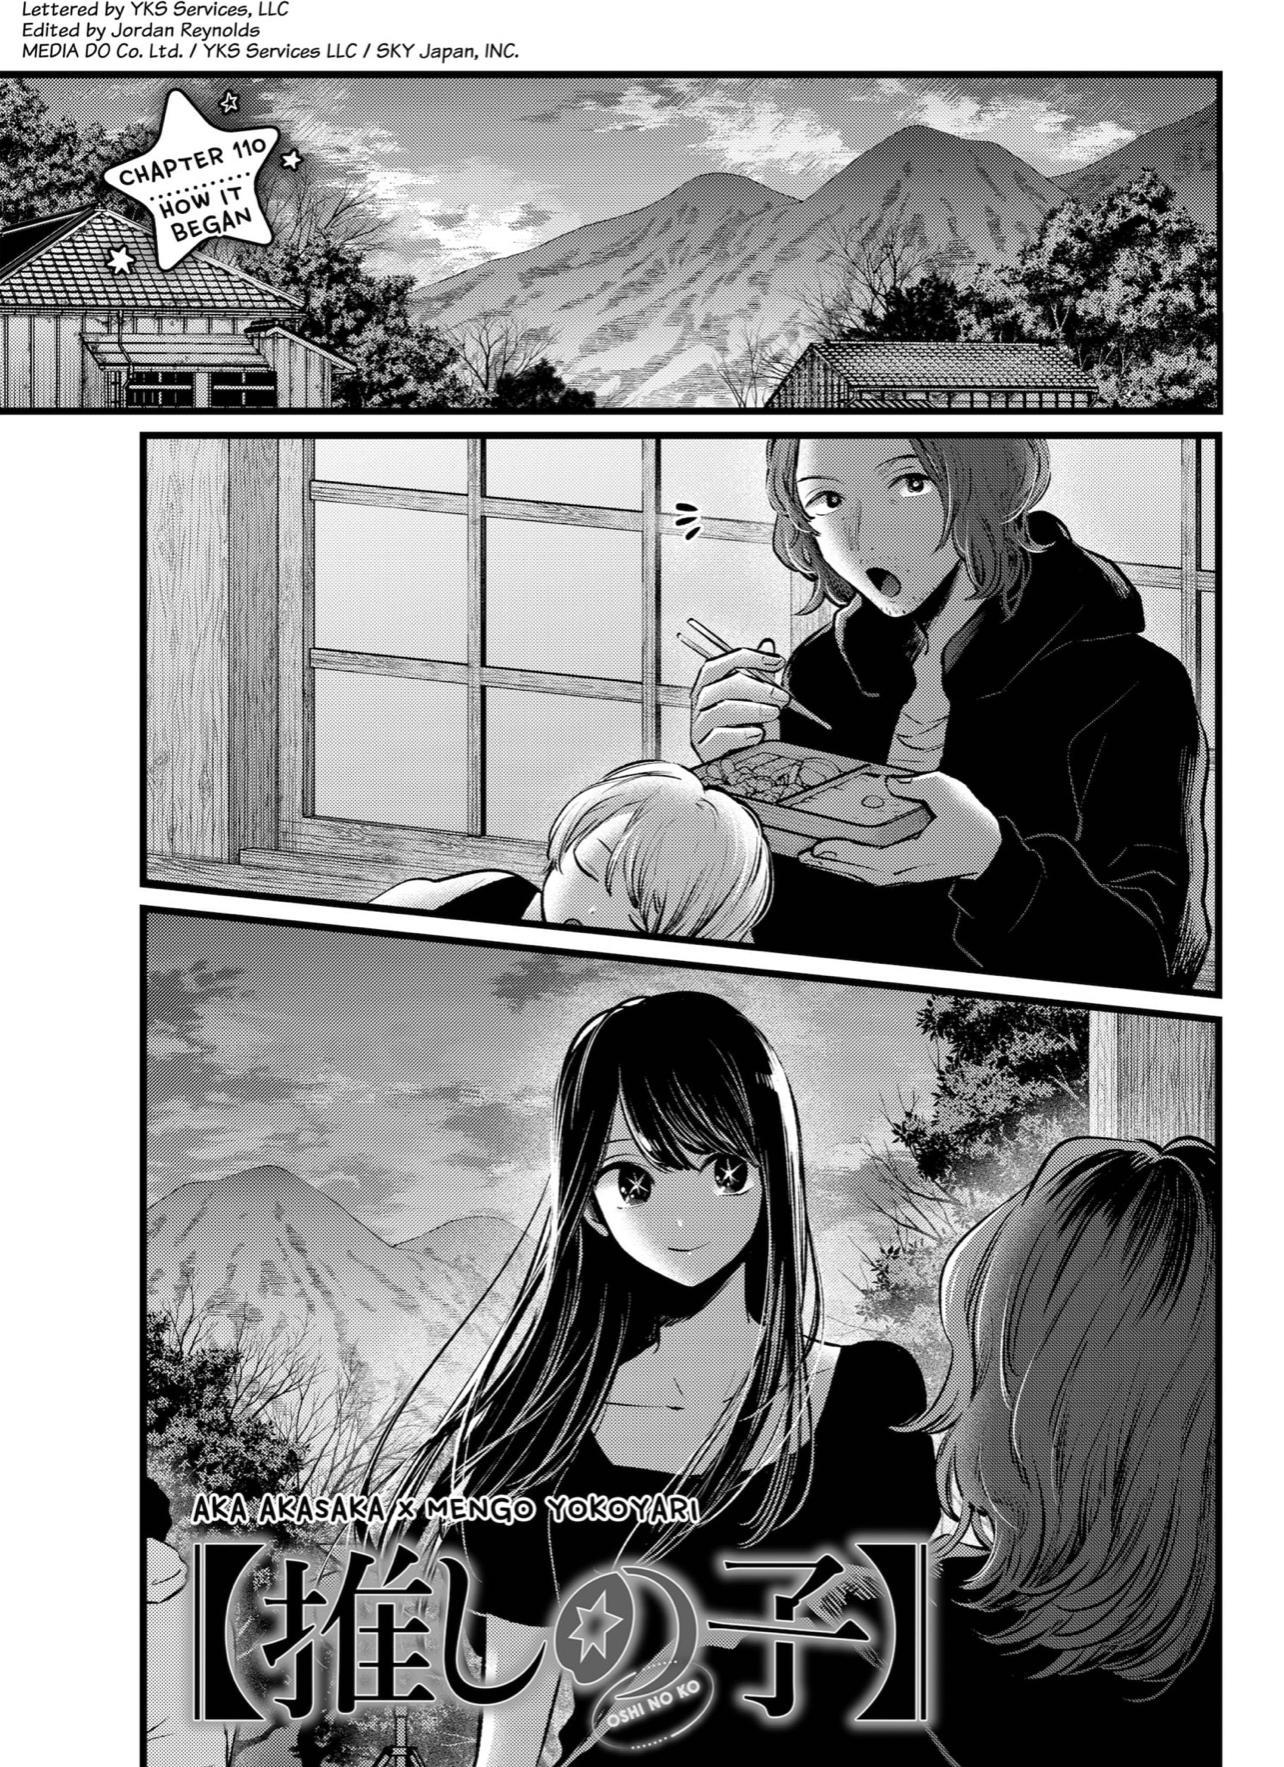 Oshi no ko, Chapter 123 - Oshi no ko Manga Online